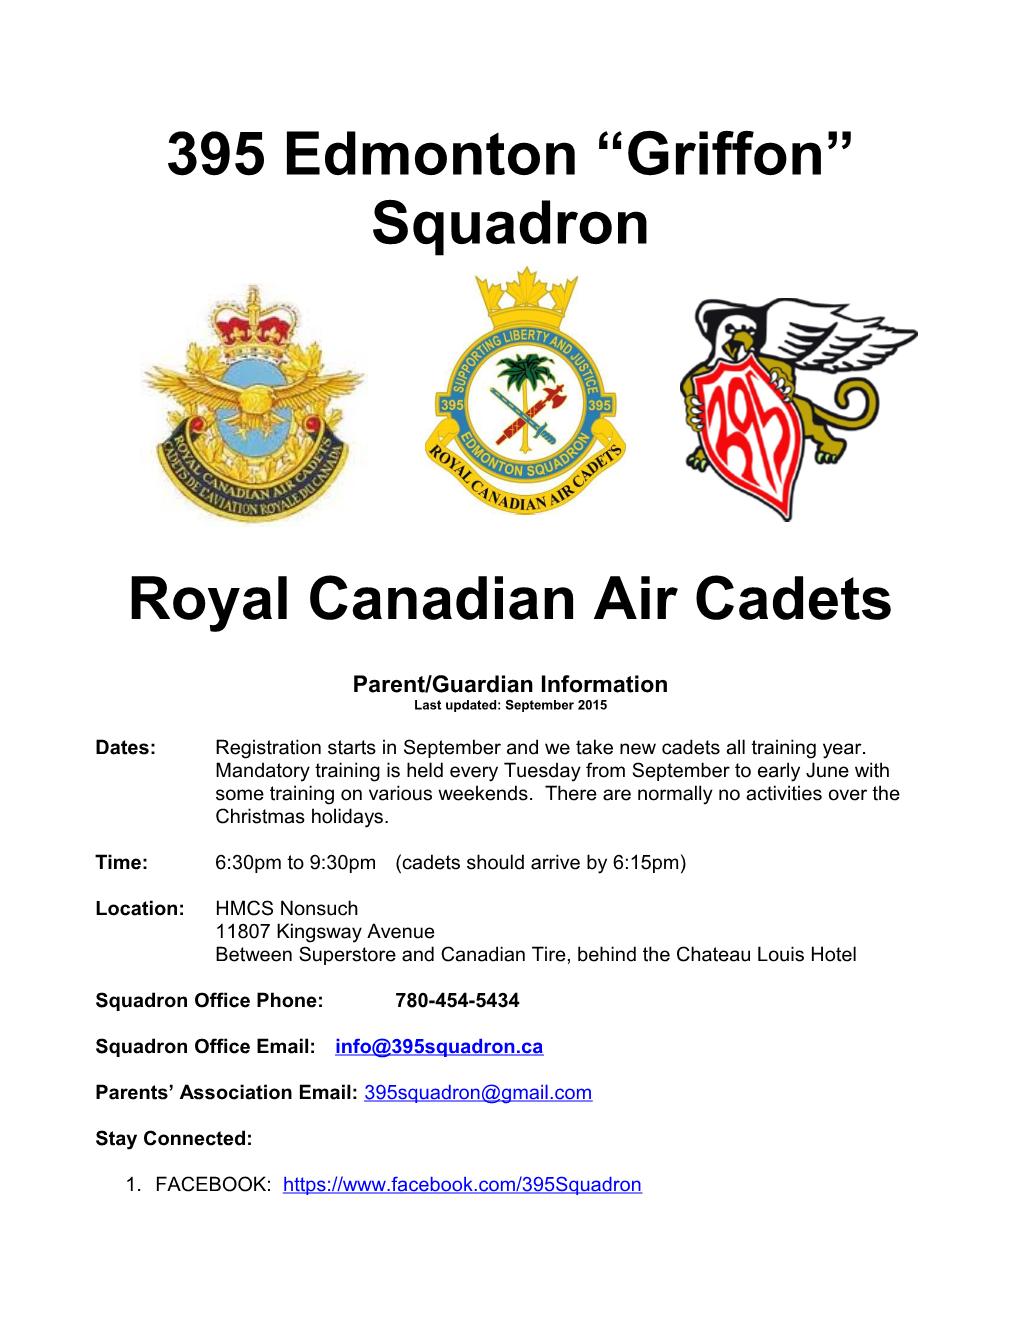 395 Griffon Edmonton Squadron